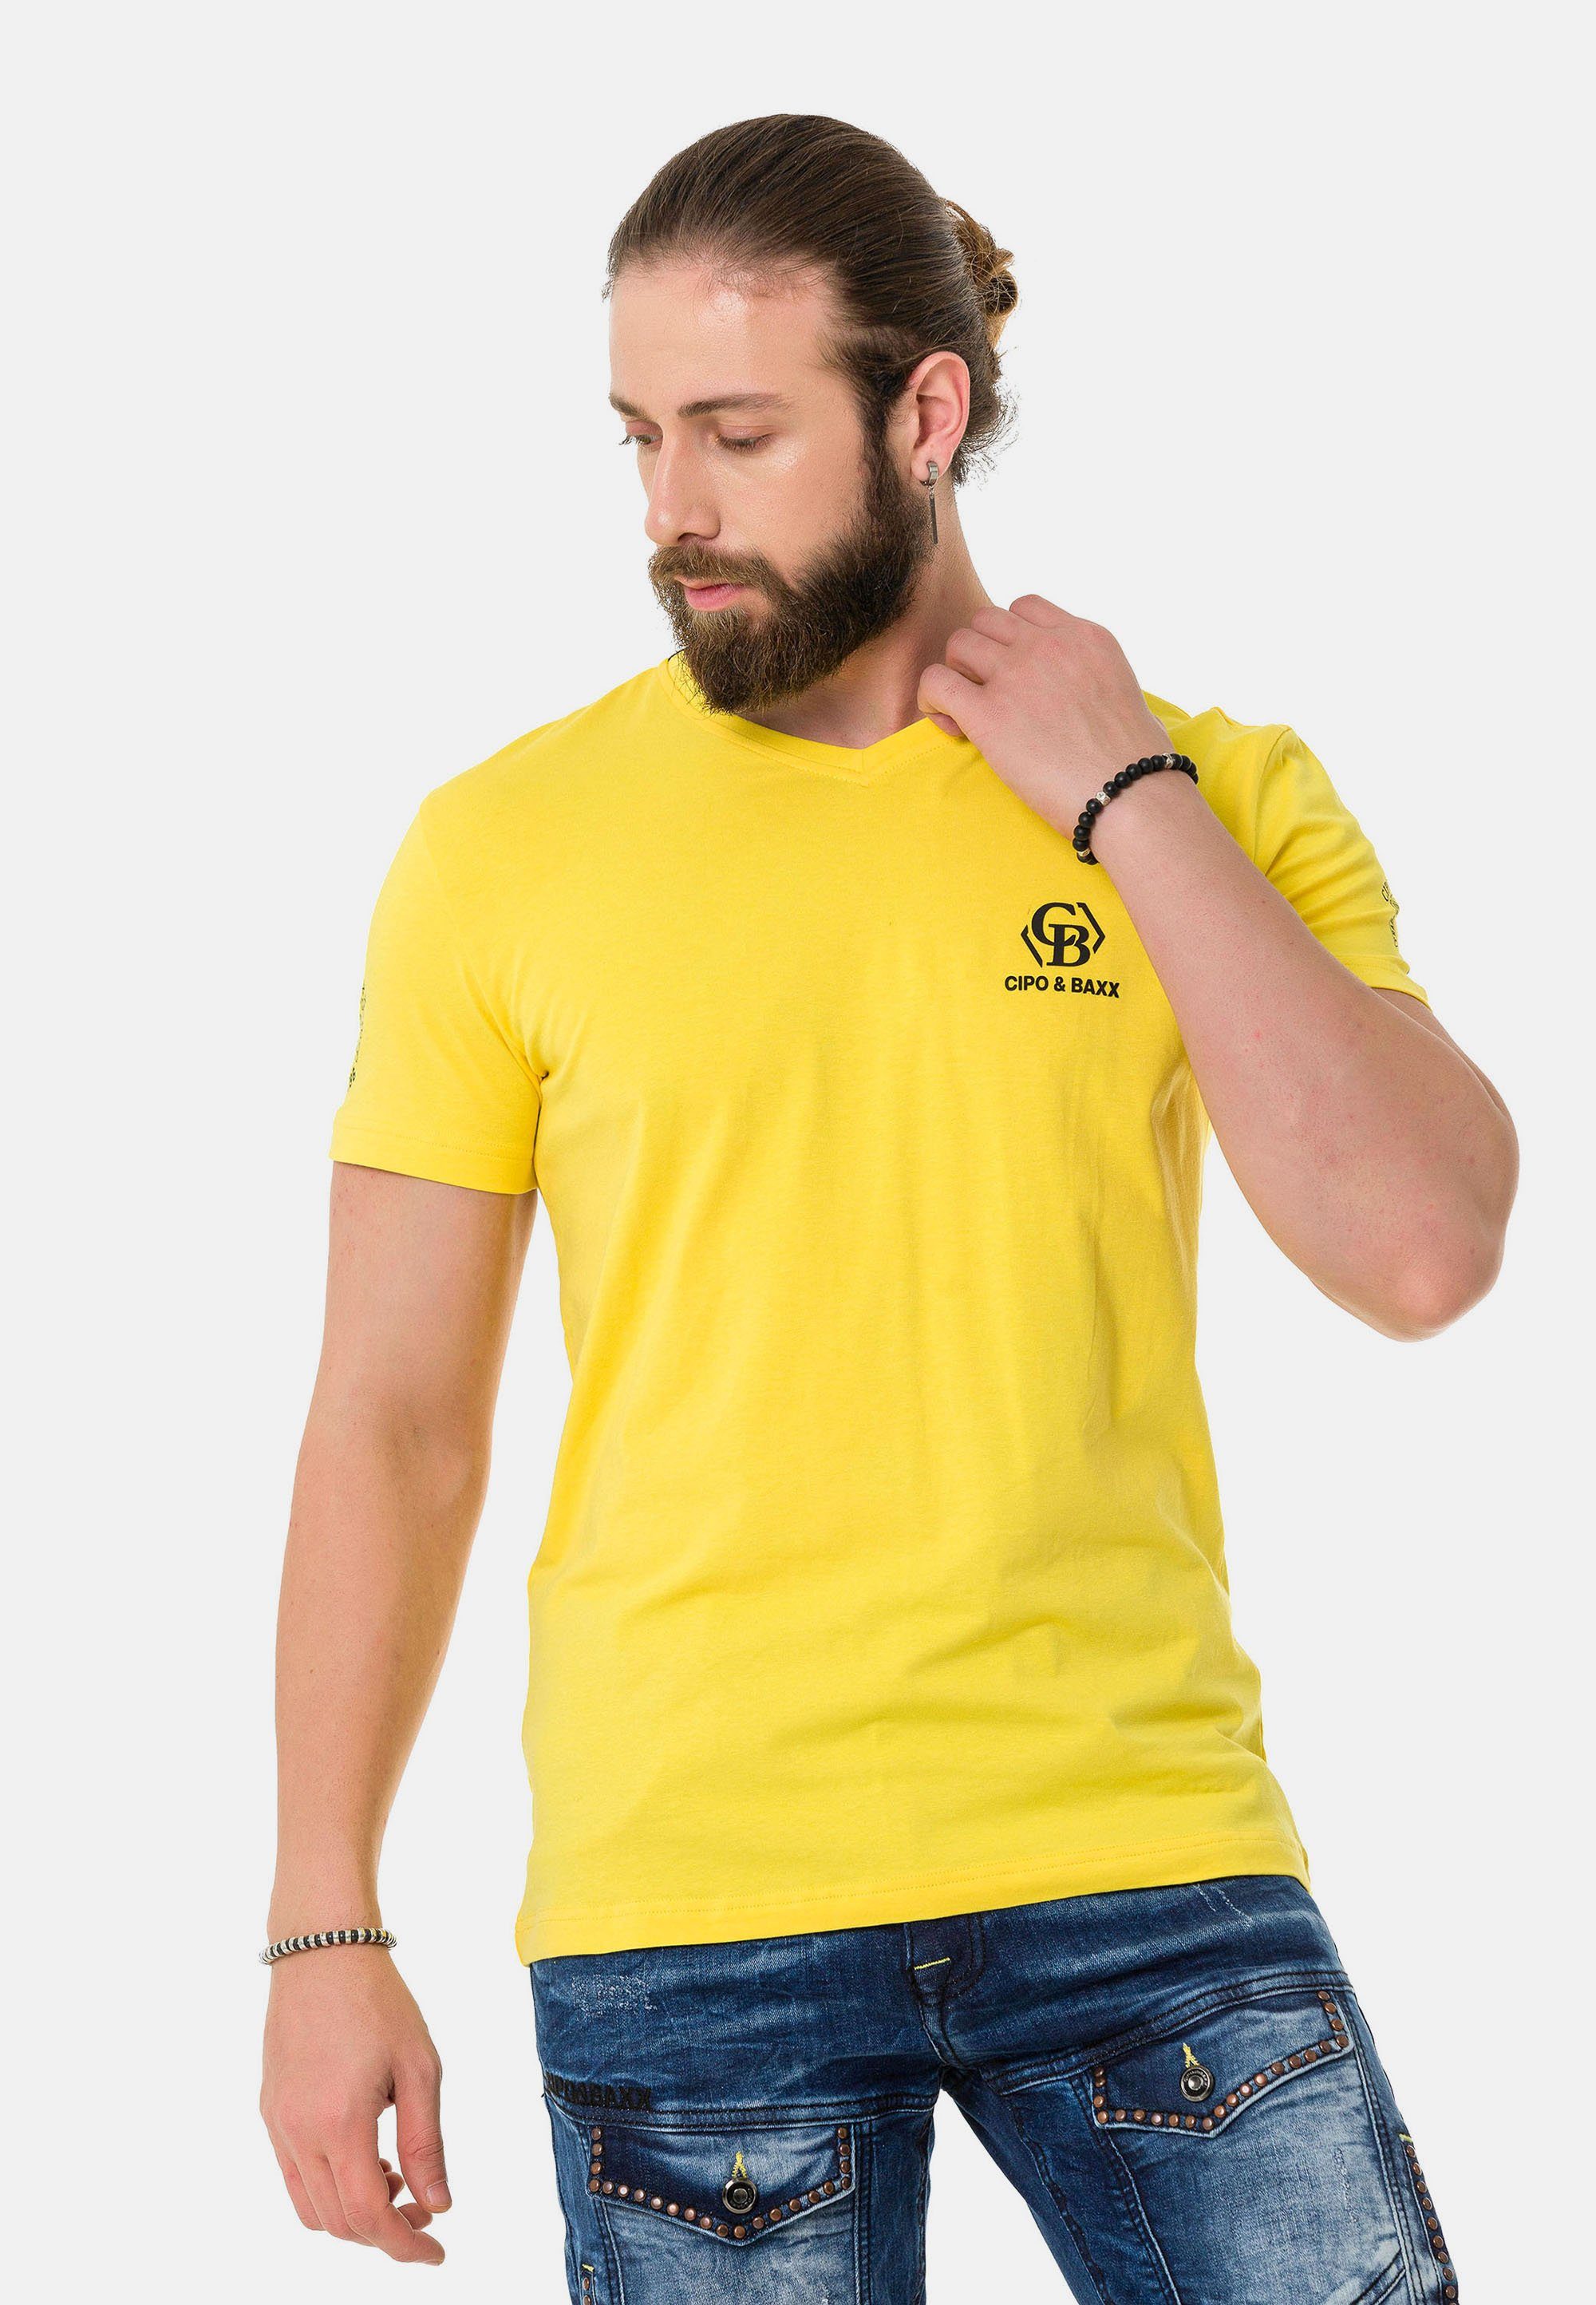 Markenlogos mit Cipo T-Shirt Baxx & gelb dezenten